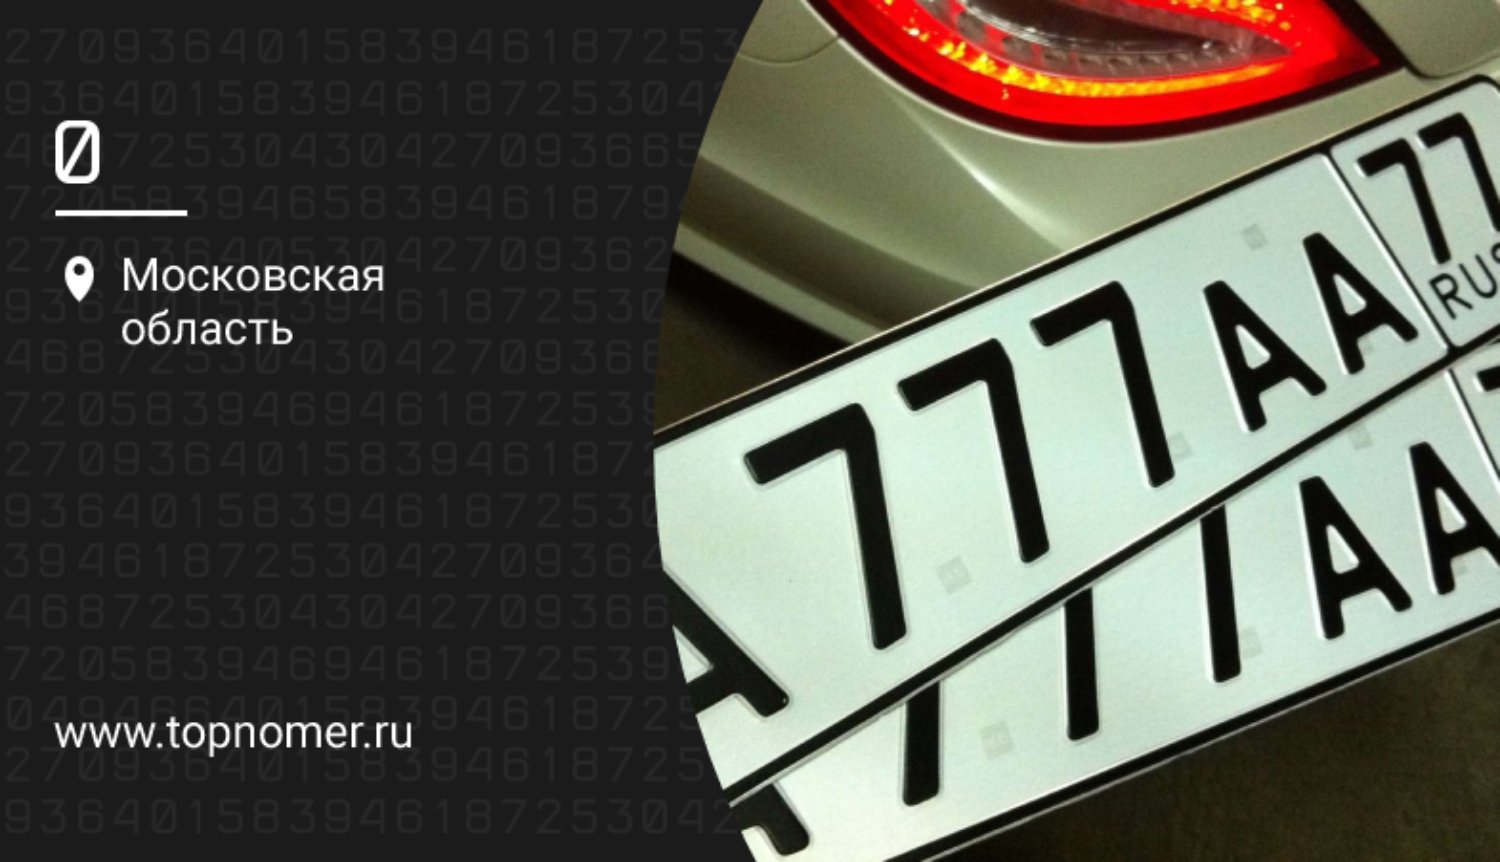 Государственные номера автомобилей – какие буквы и что означают?